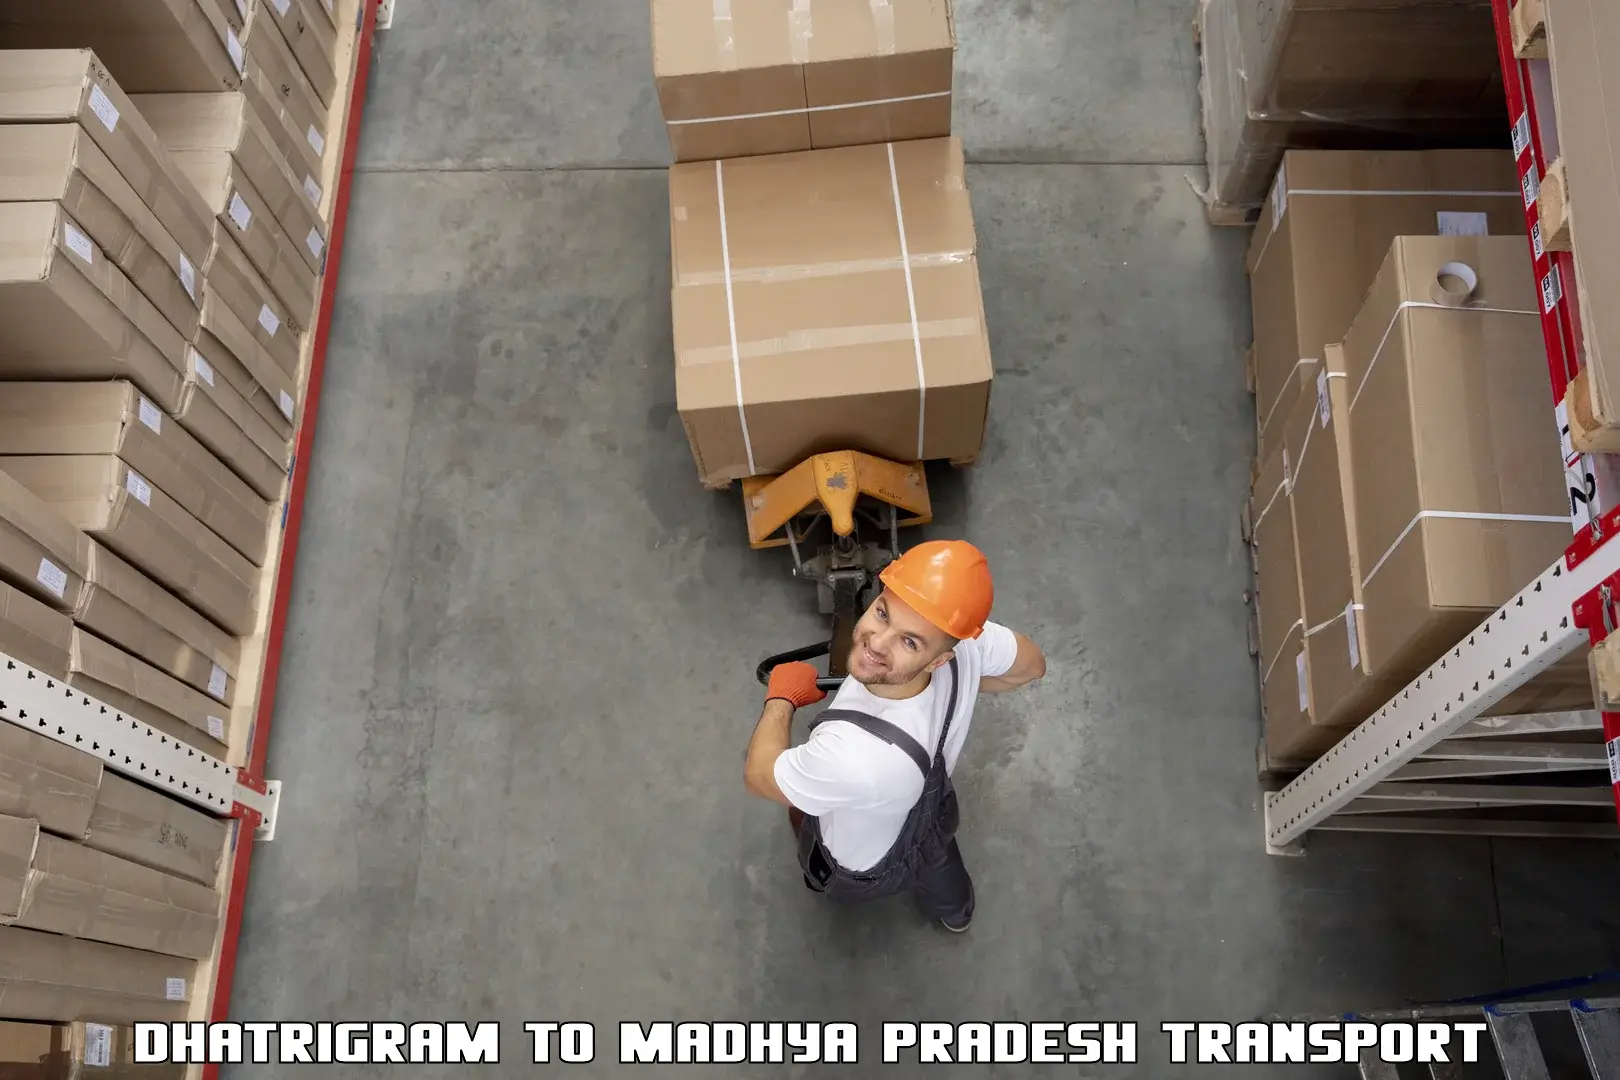 Cargo transportation services Dhatrigram to Nagod